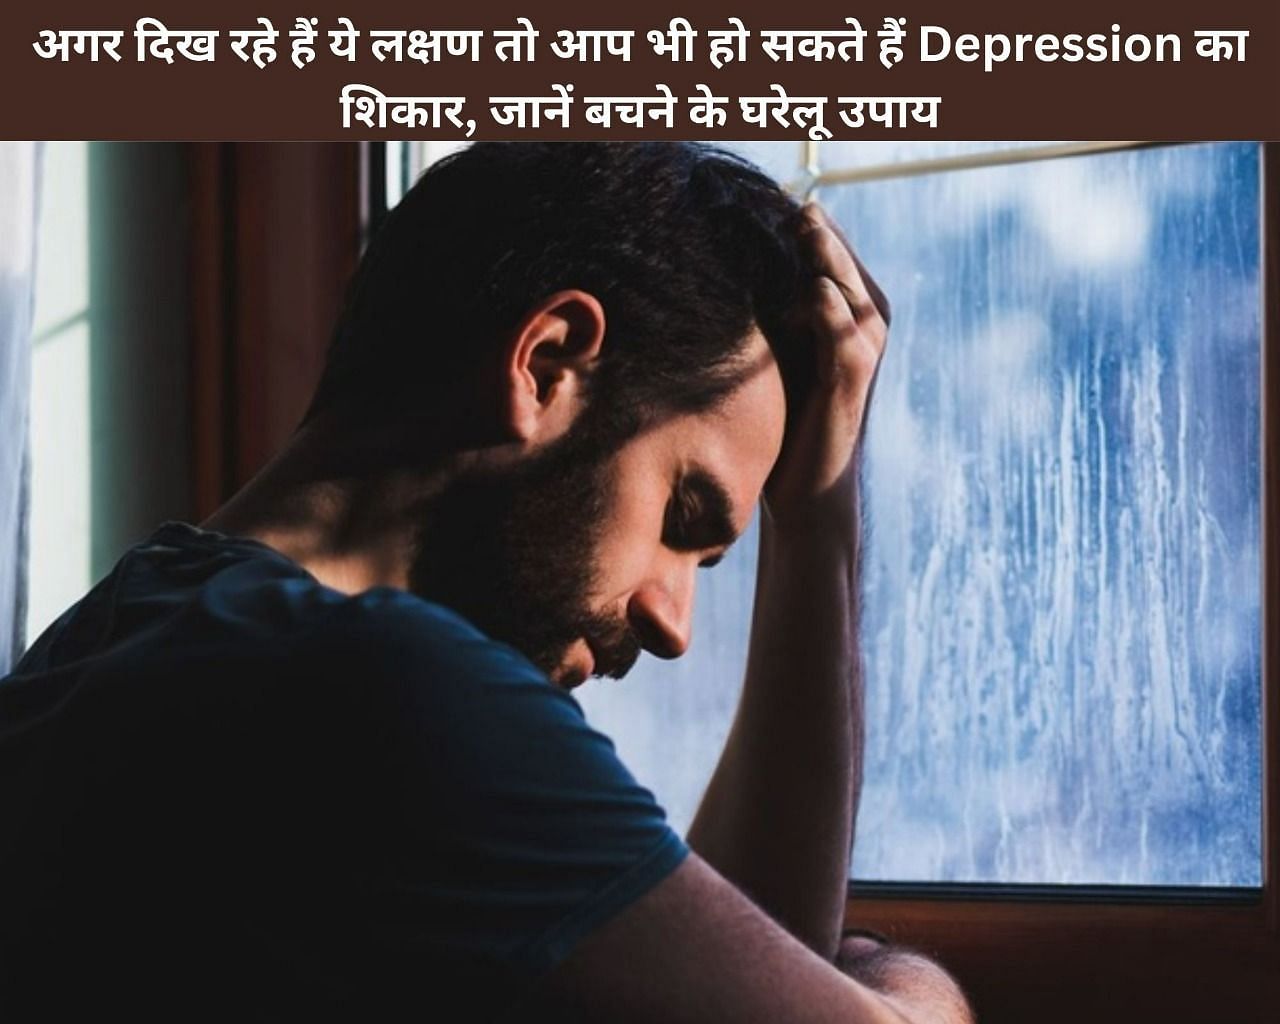 अगर दिख रहे हैं ये लक्षण तो आप भी हो सकते हैं Depression का शिकार, जानें बचने के घरेलू उपाय